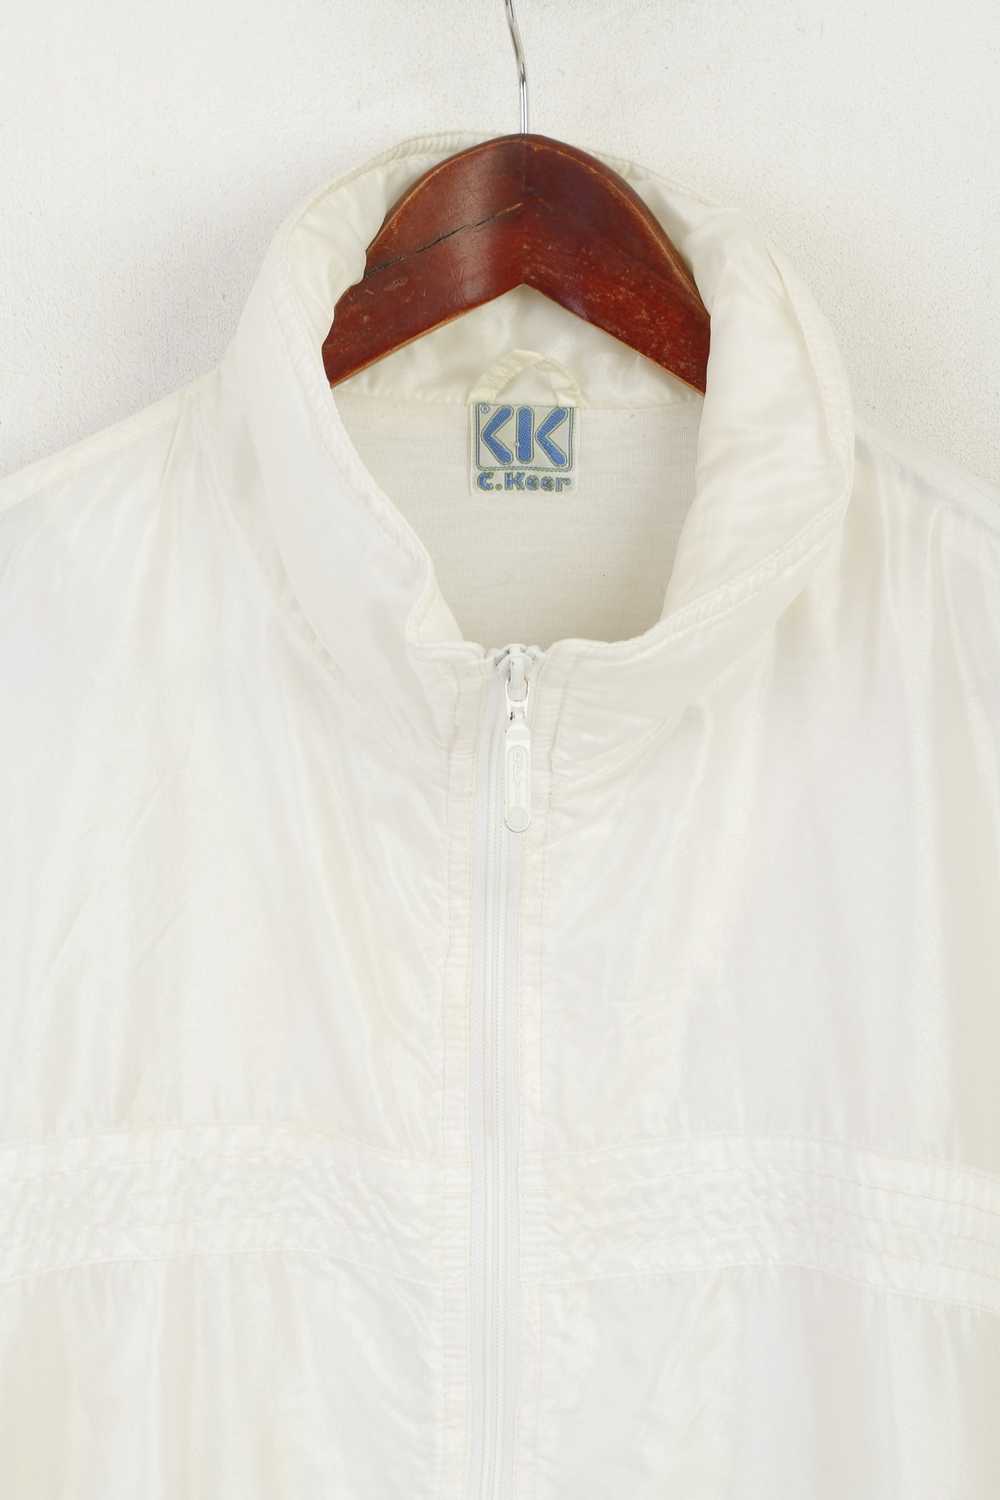 Vintage C. Keer Men 52 L Jacket Cream Shiny Vinta… - image 2